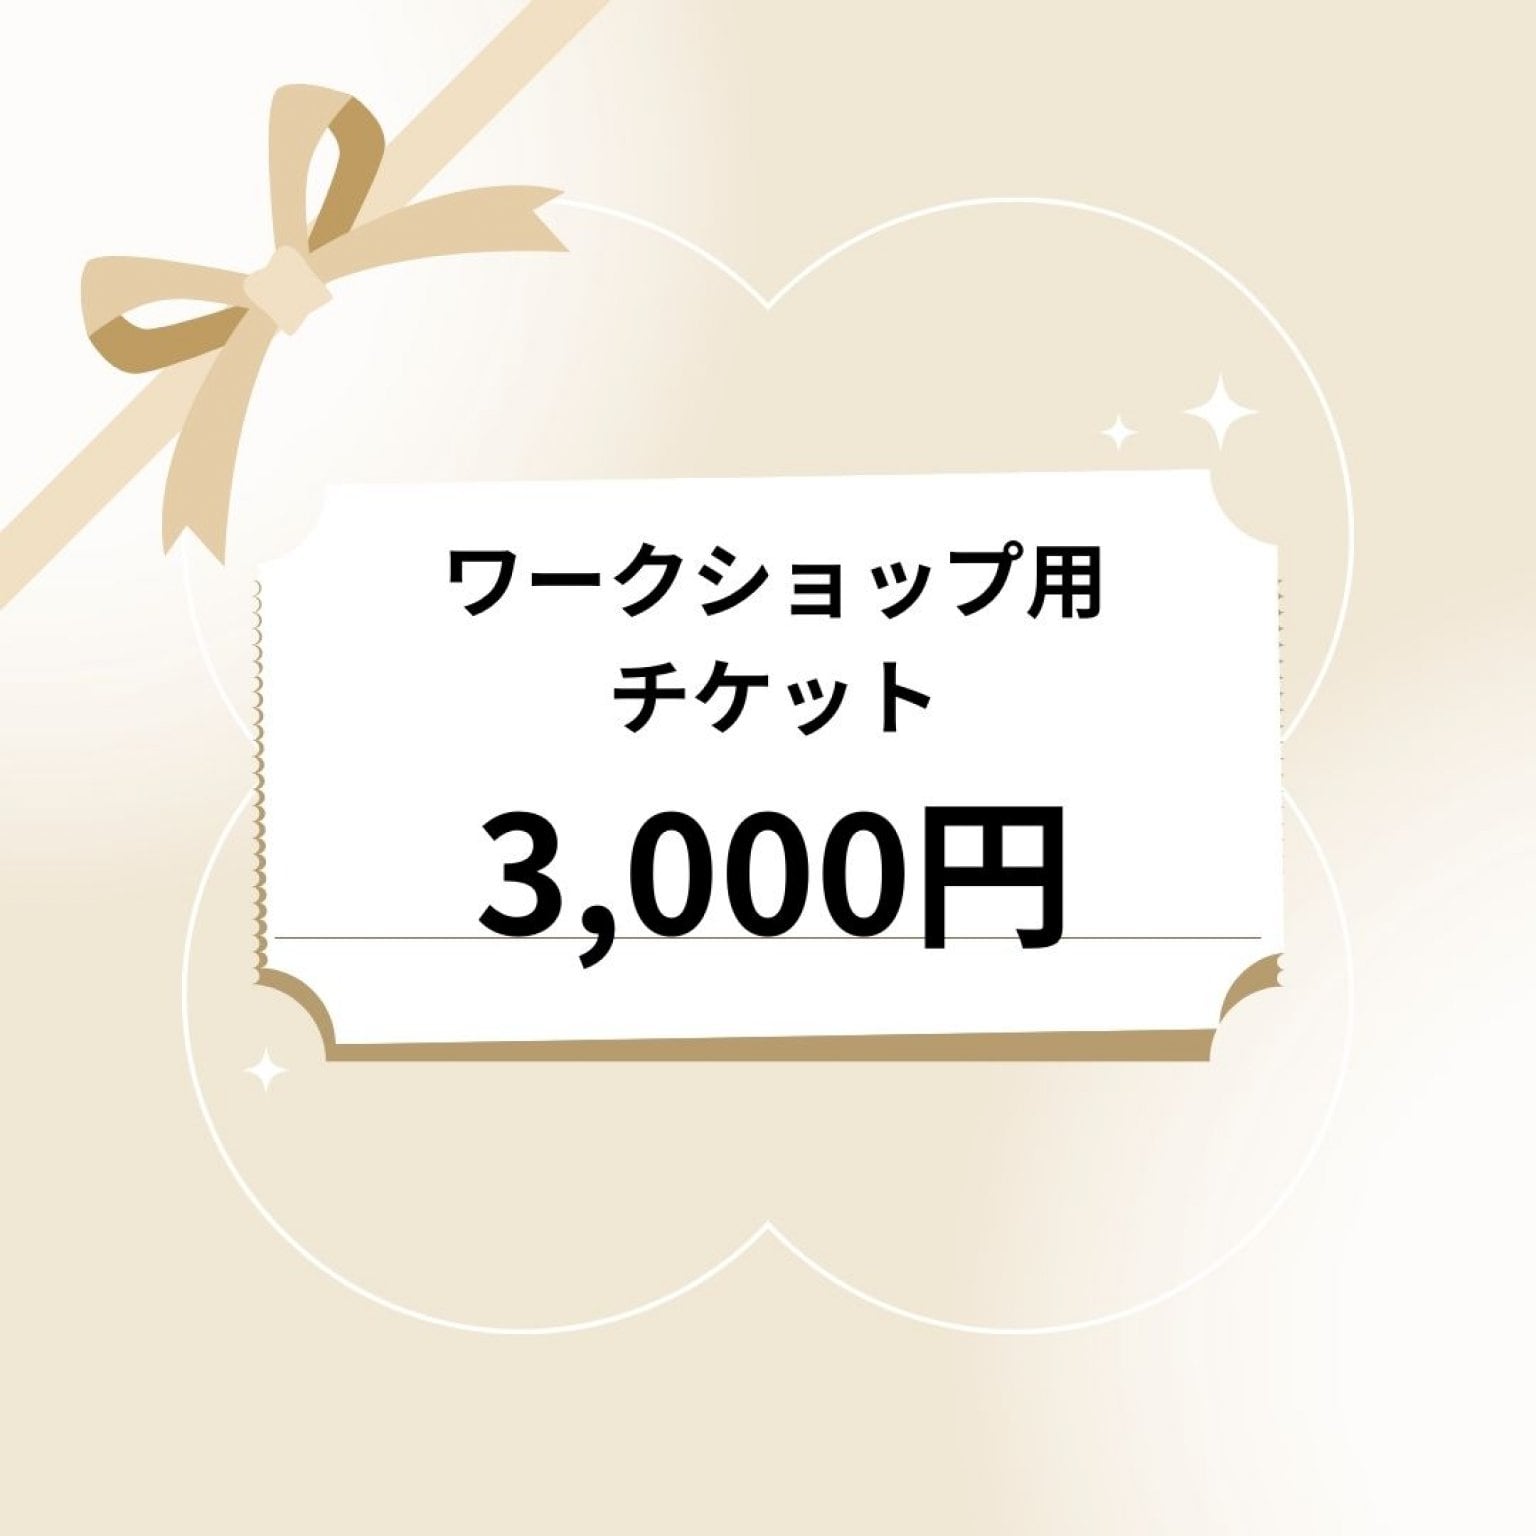 【3000円】アロマクラフト・ワークショップ用チケット